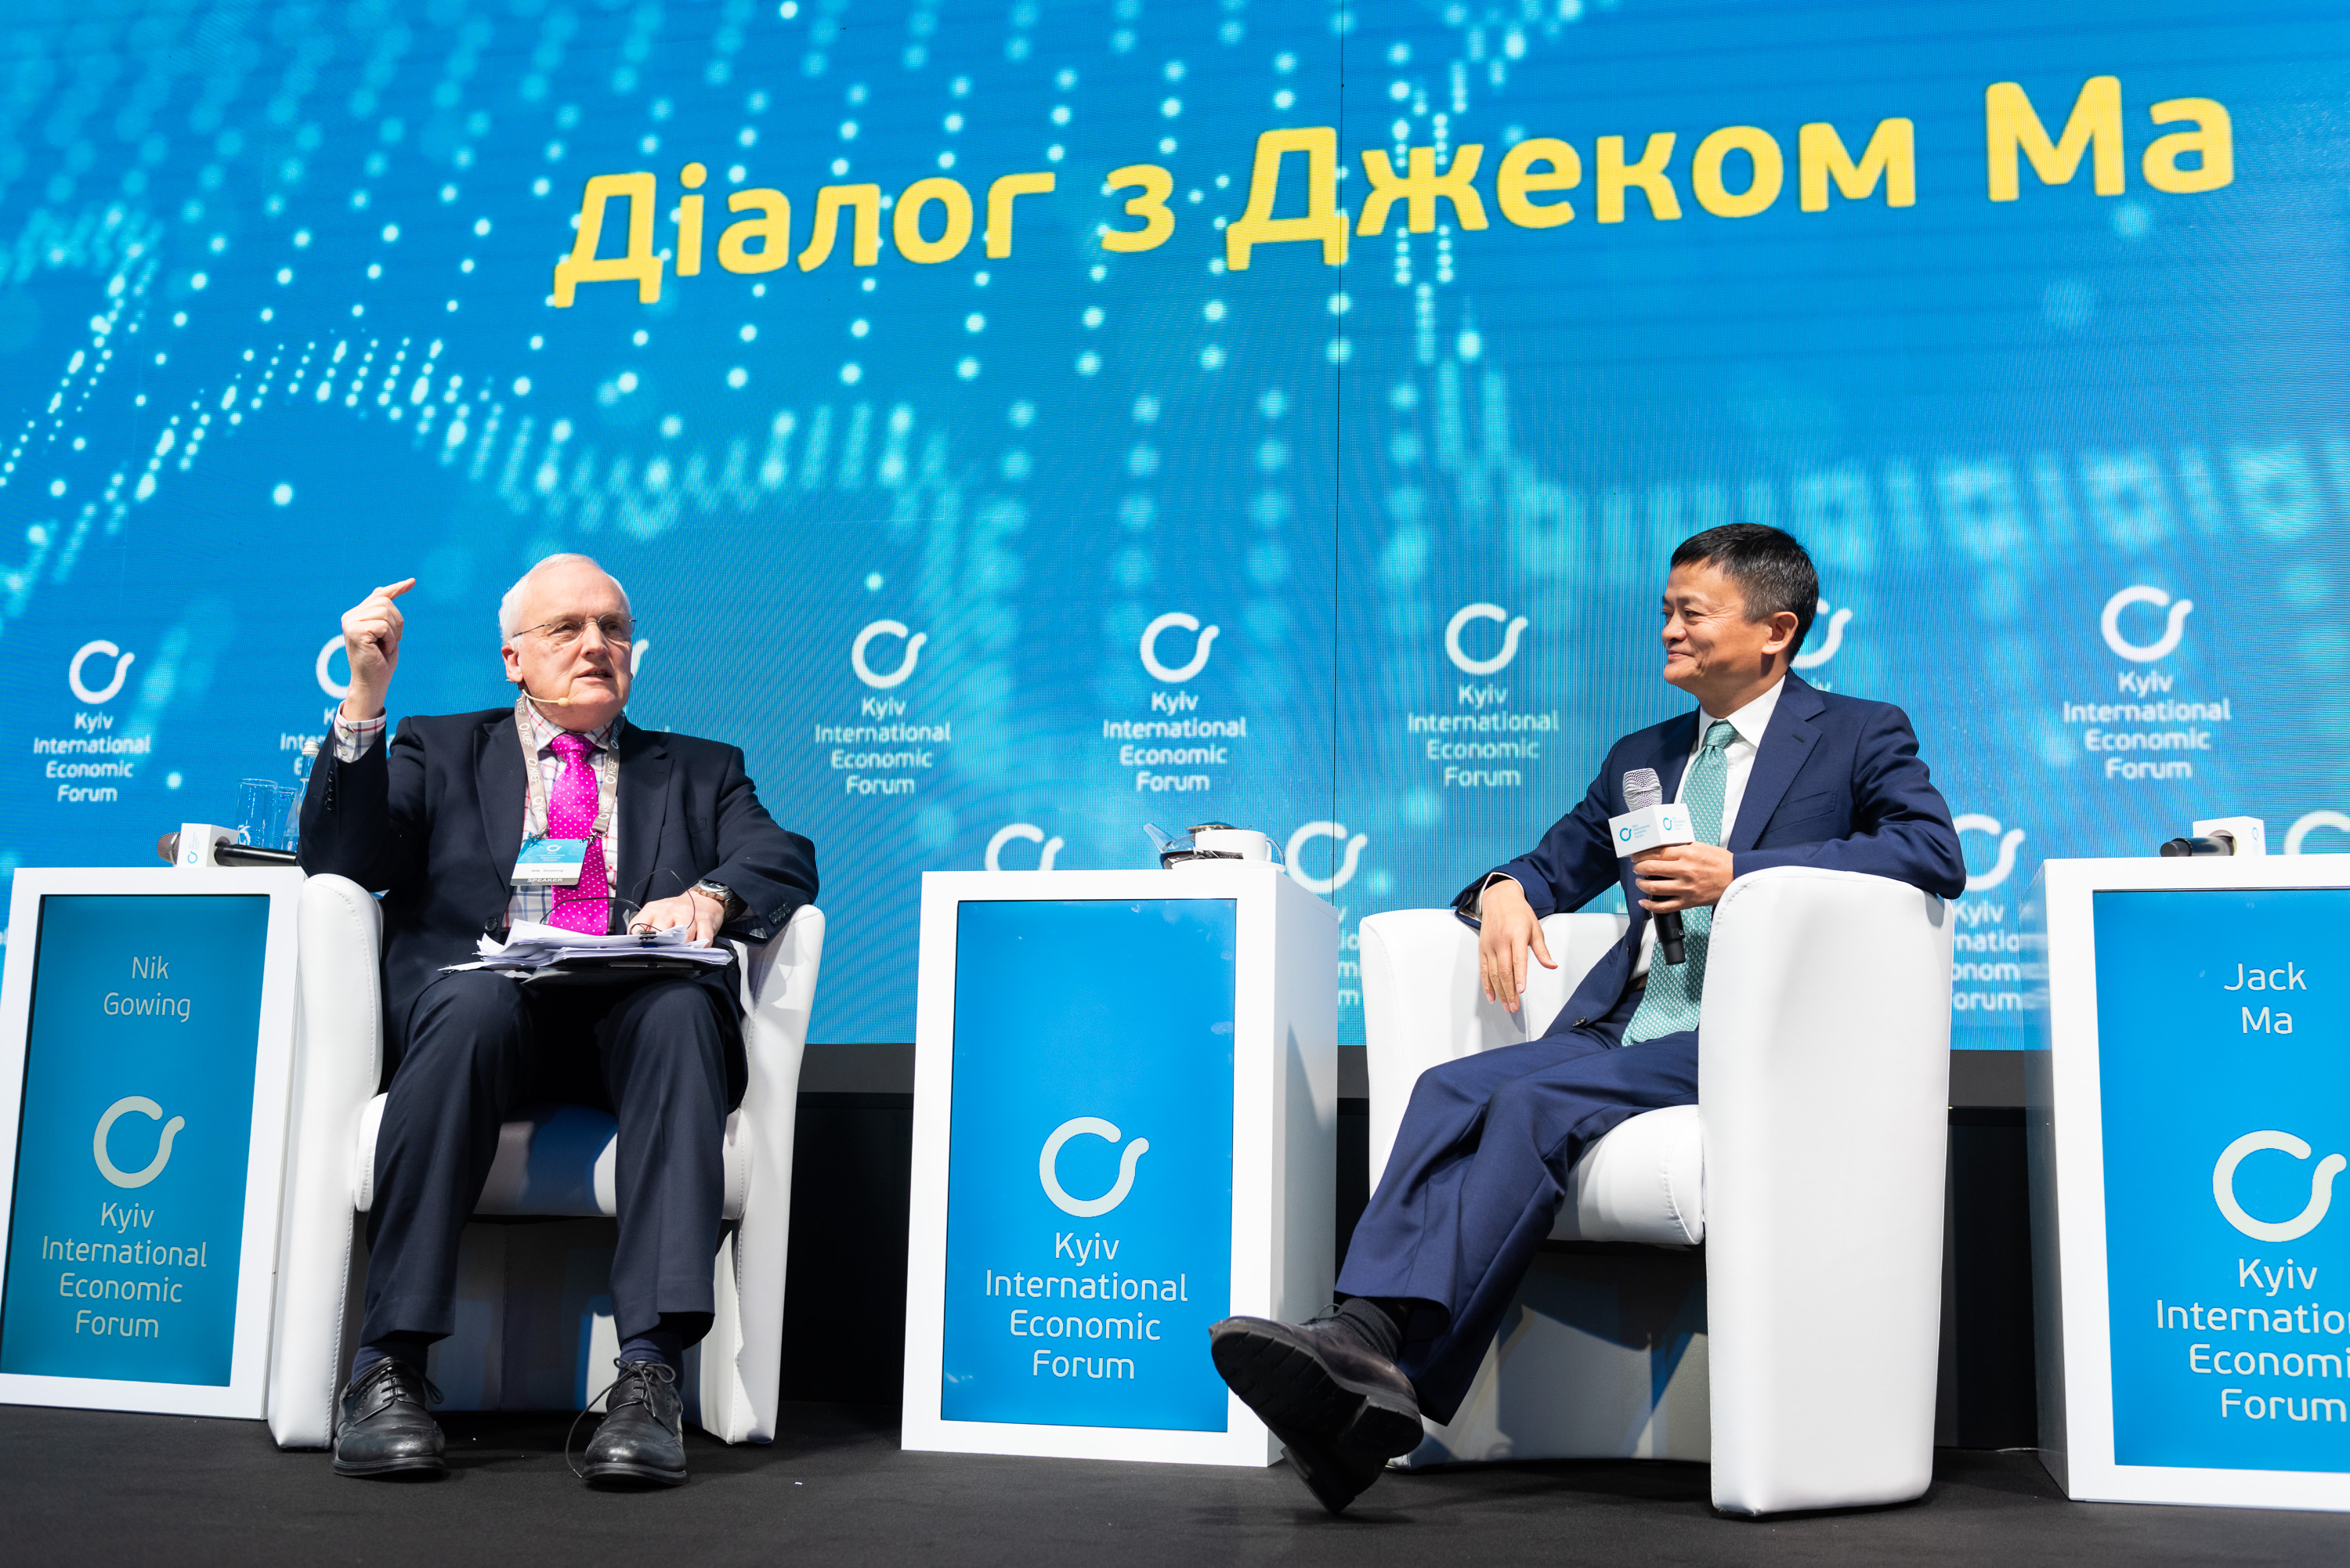 Dialog with Jack Ma KIEF 2019